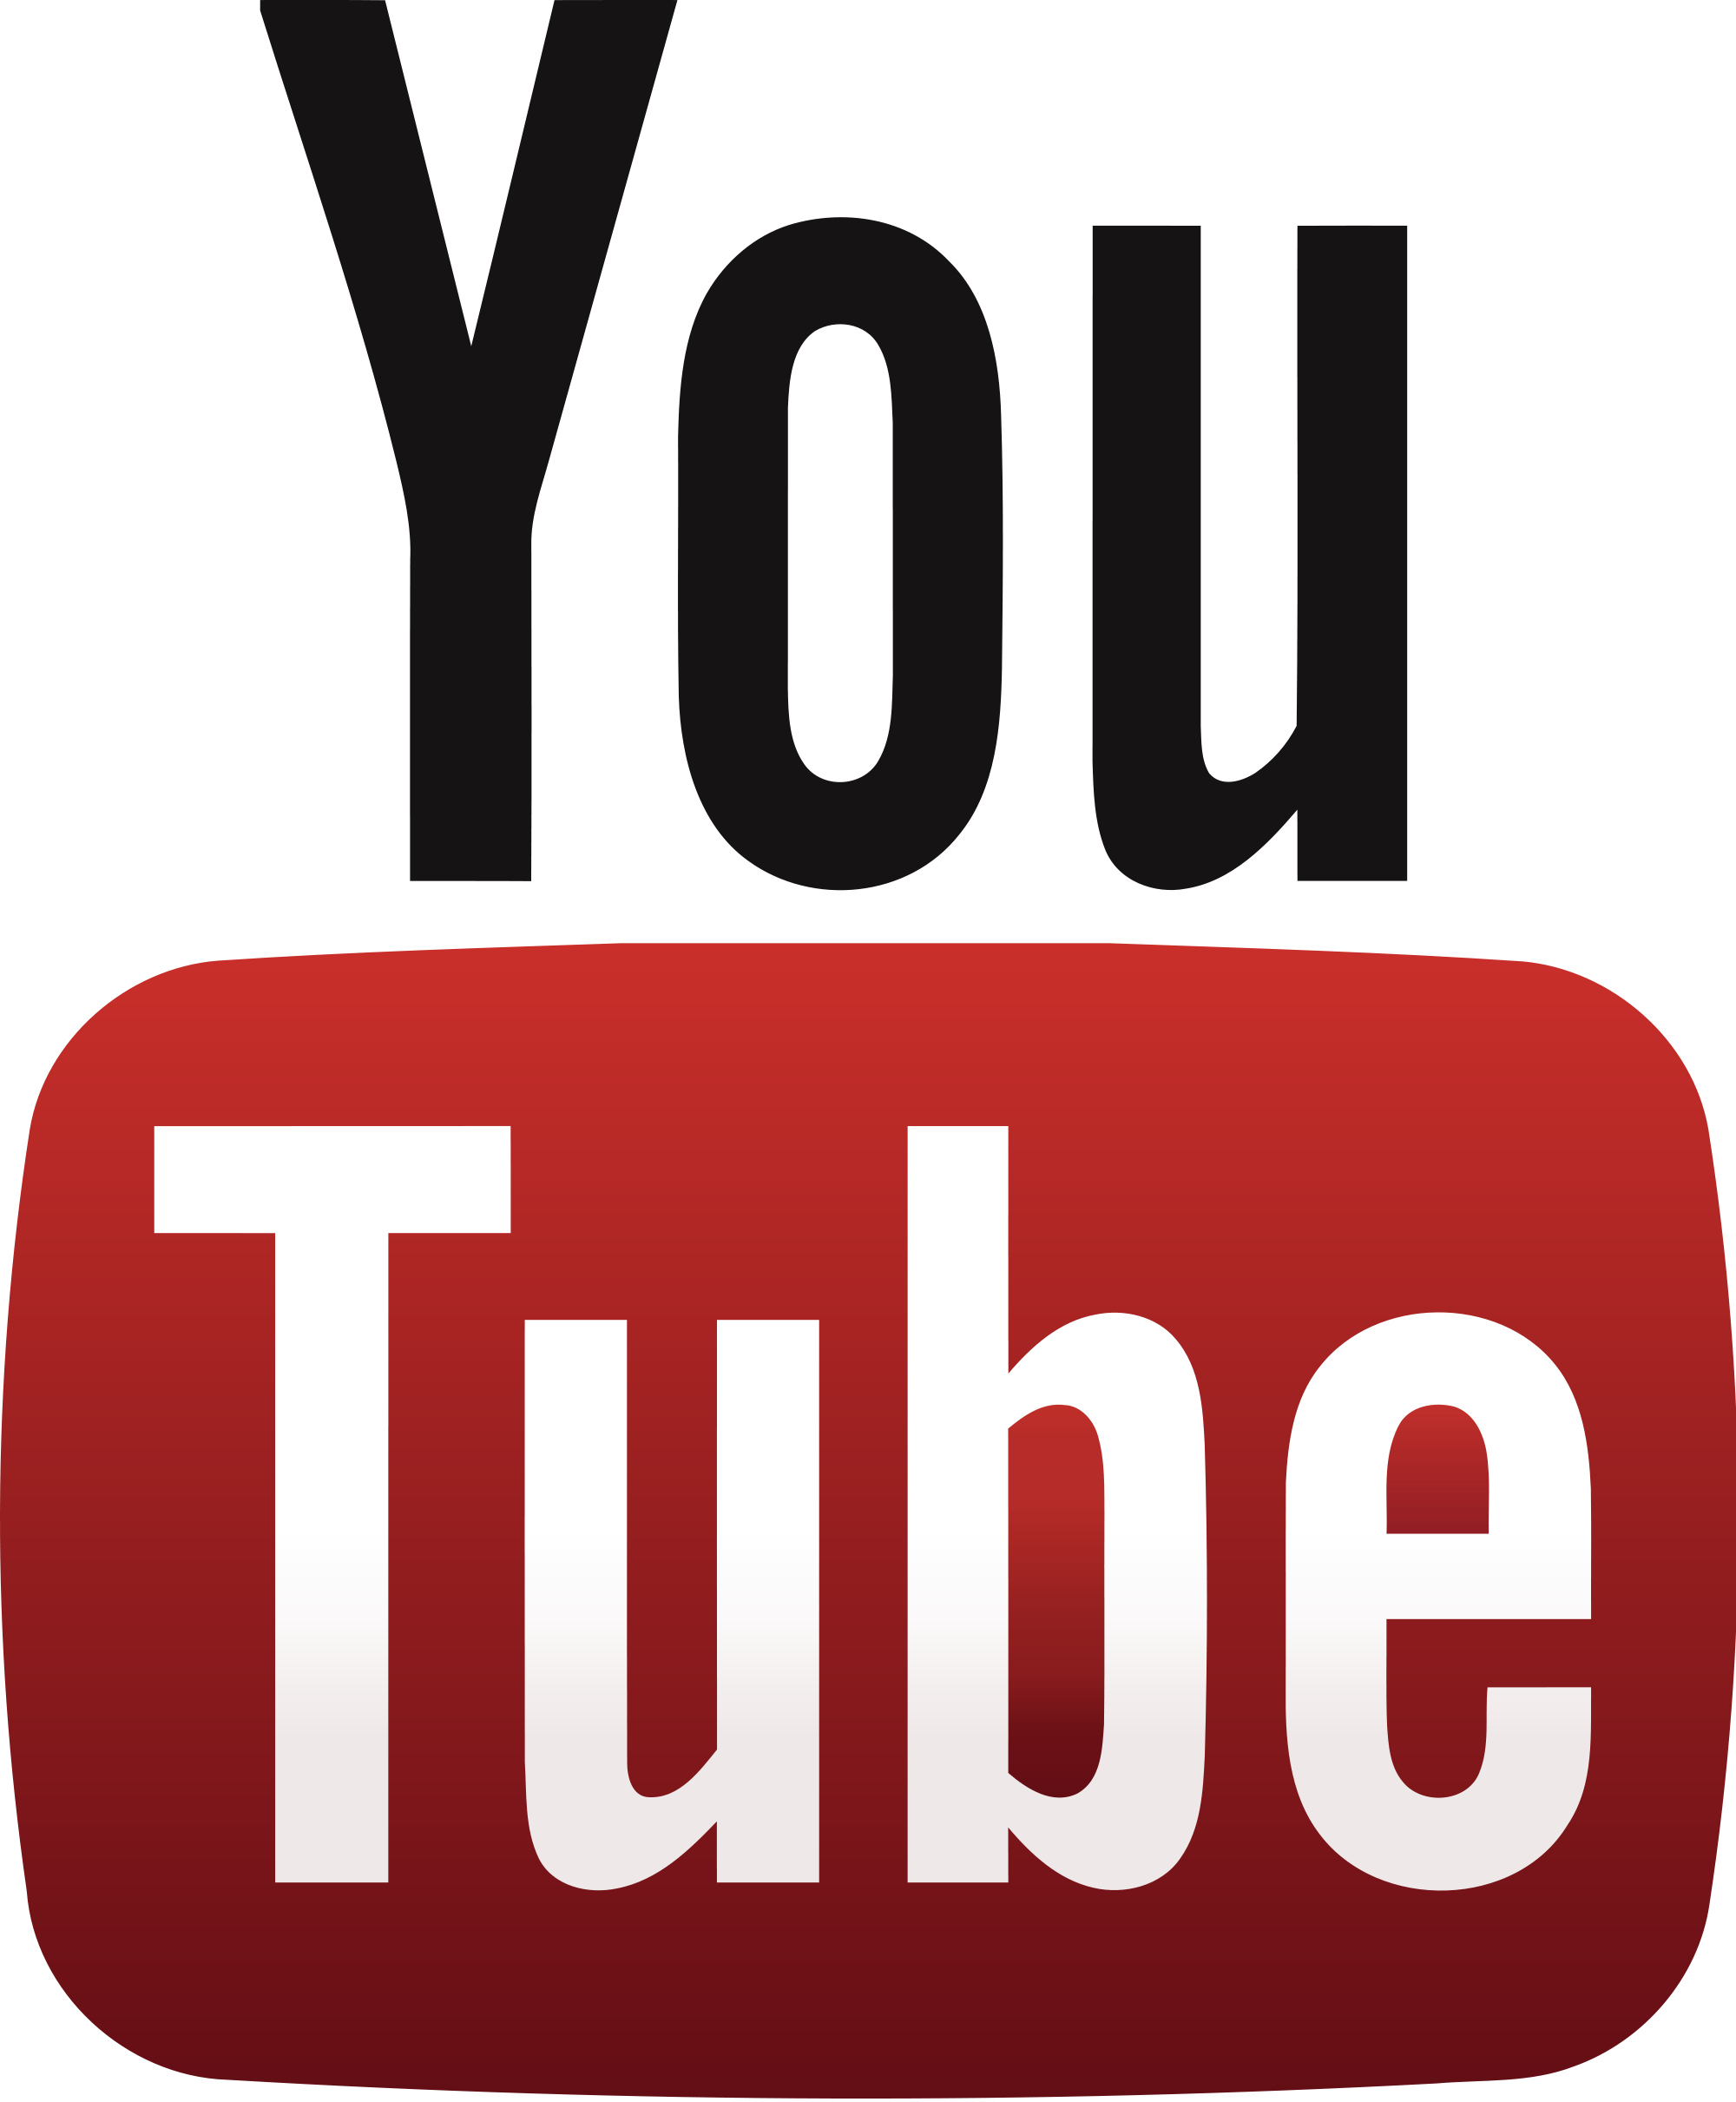 Ютуб лого. Лого youtube PNG. Тюб. Туба. Старый лого ютуба